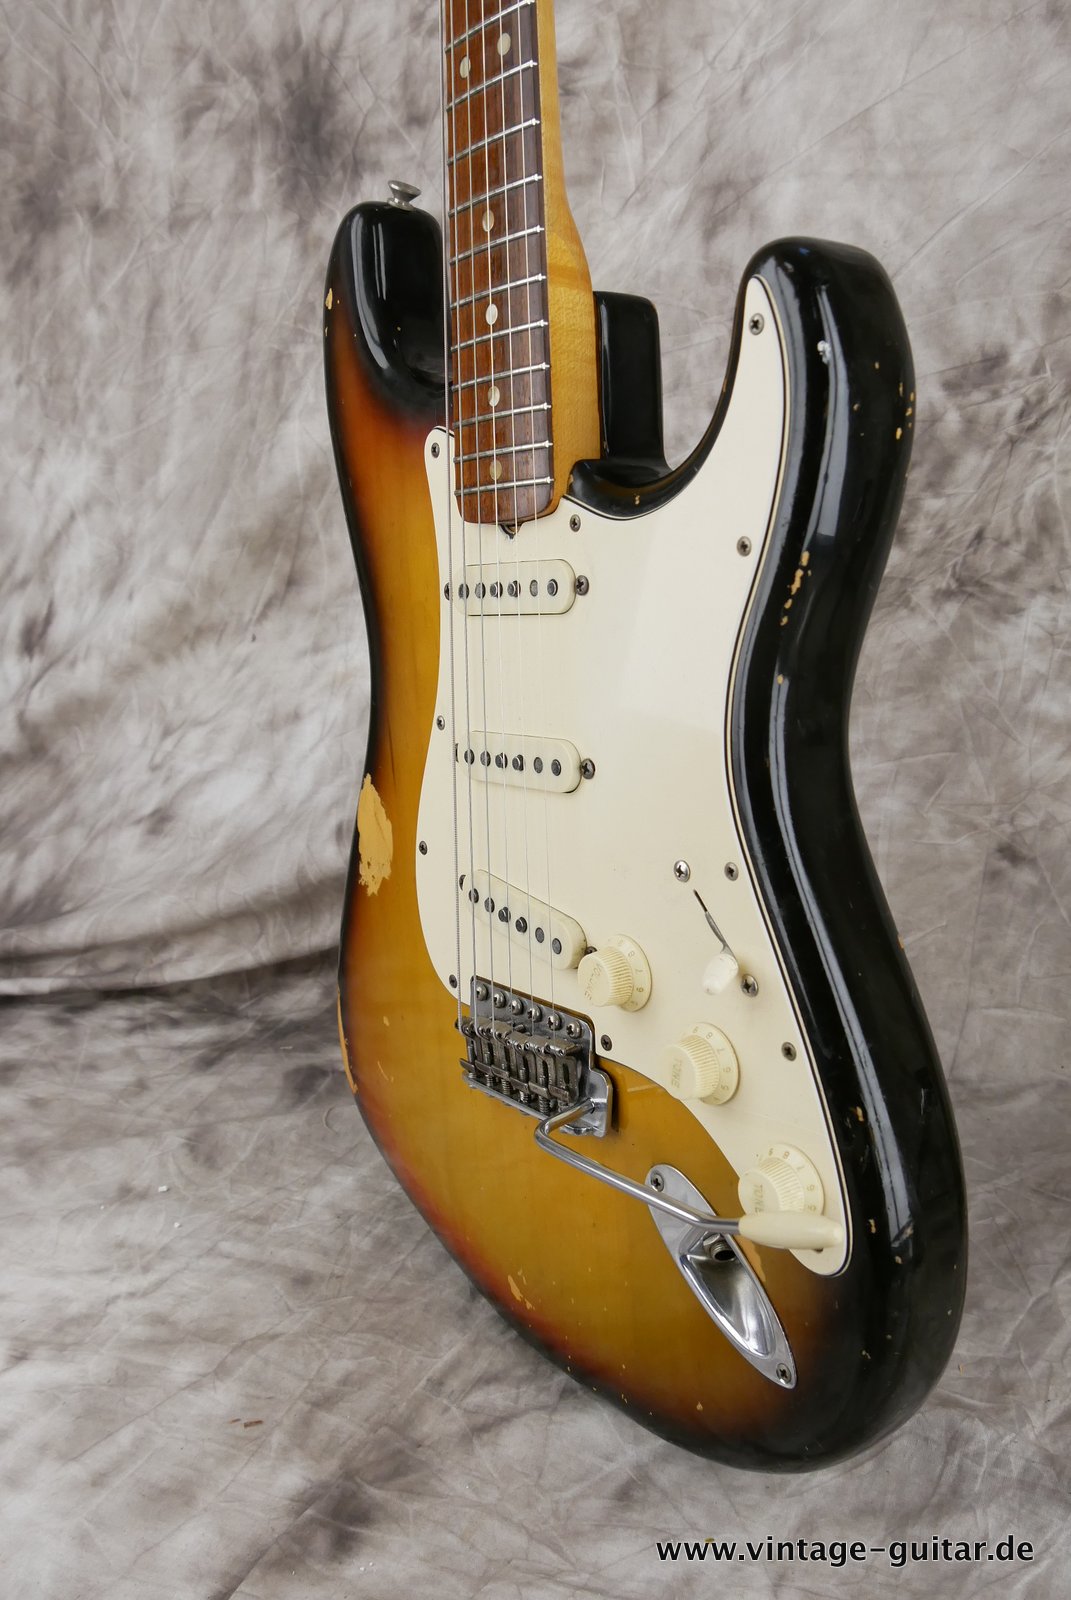 Fender-Stratocaster-1972-sunburst-4-hole-006.JPG